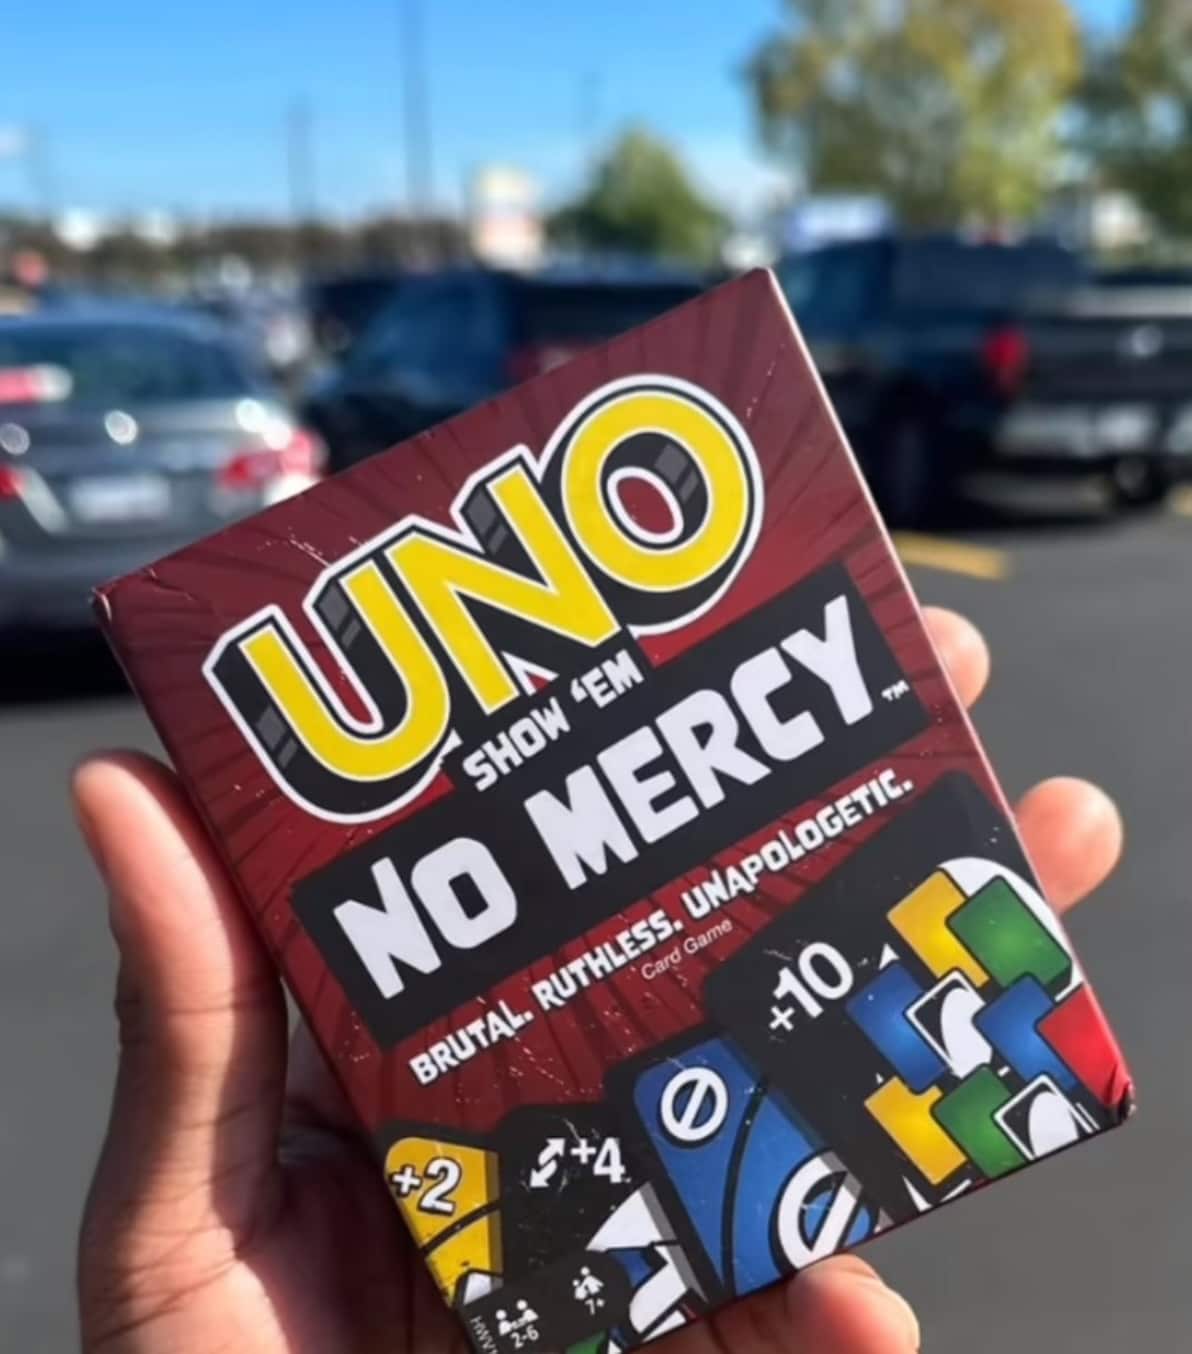 Mattel annonce une version sans pitié du Uno avec des cartes +6 et +10